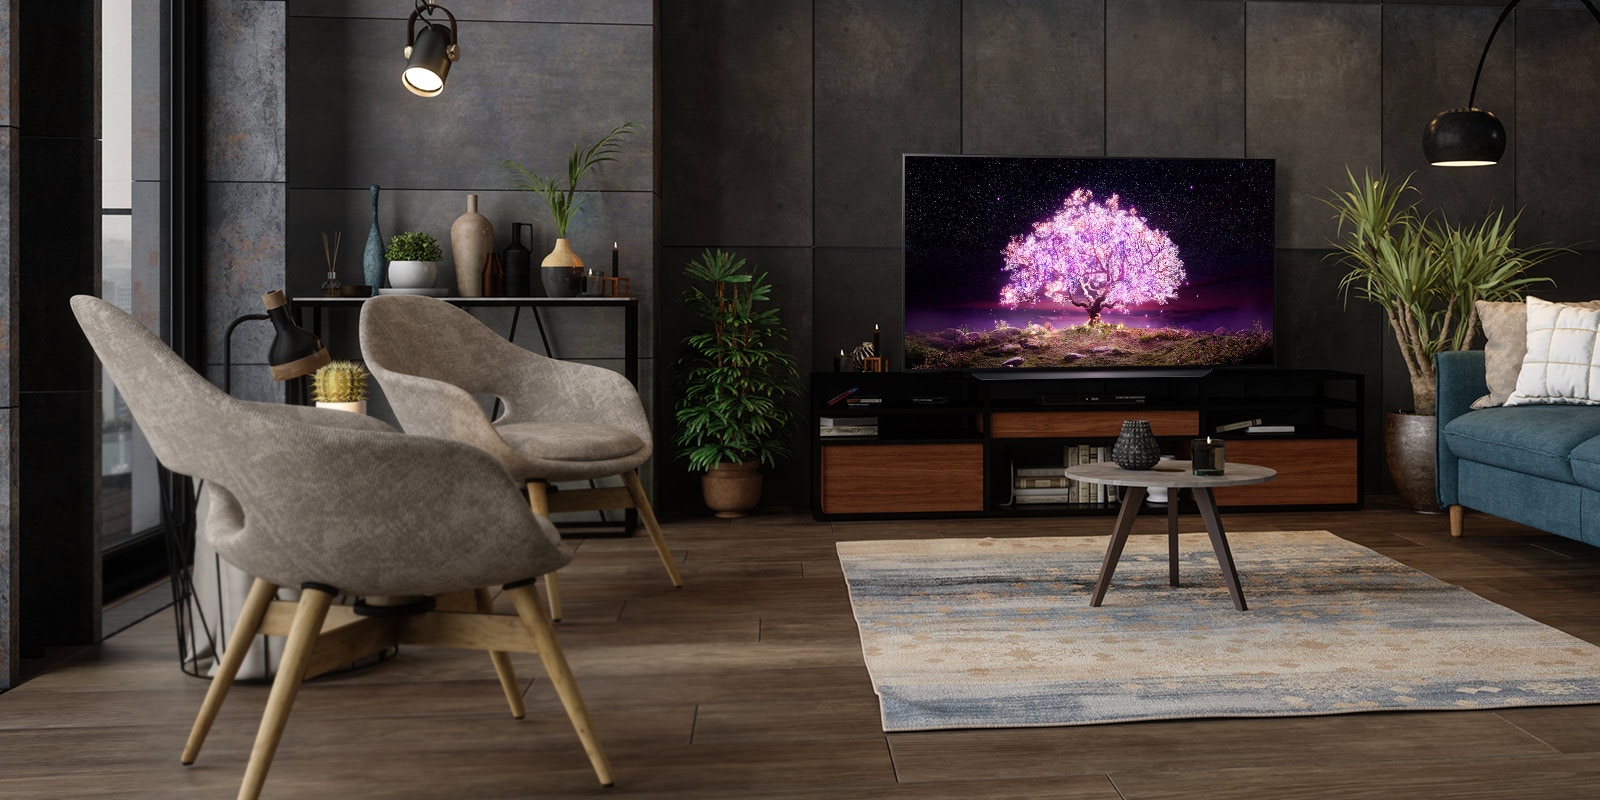 Un televizor pe care se afiseaza un copac care emite lumina purpurie intr-o casa luxoasa